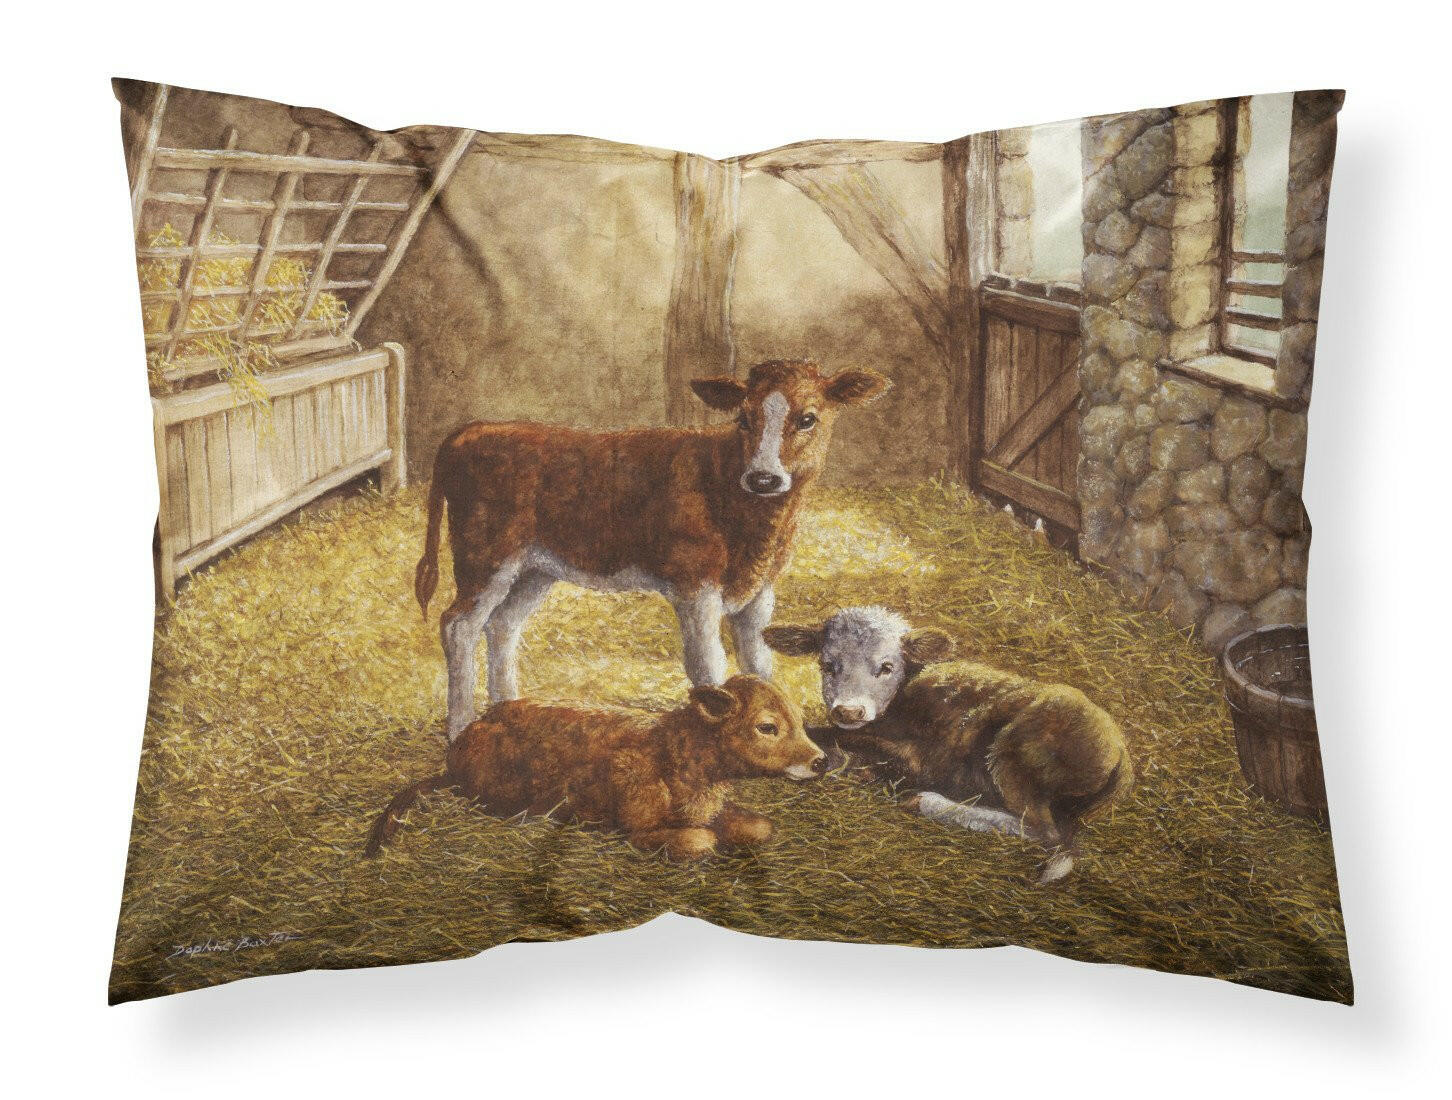 Cows Calves in the Barn Fabric Standard Pillowcase BDBA0179PILLOWCASE by Caroline's Treasures